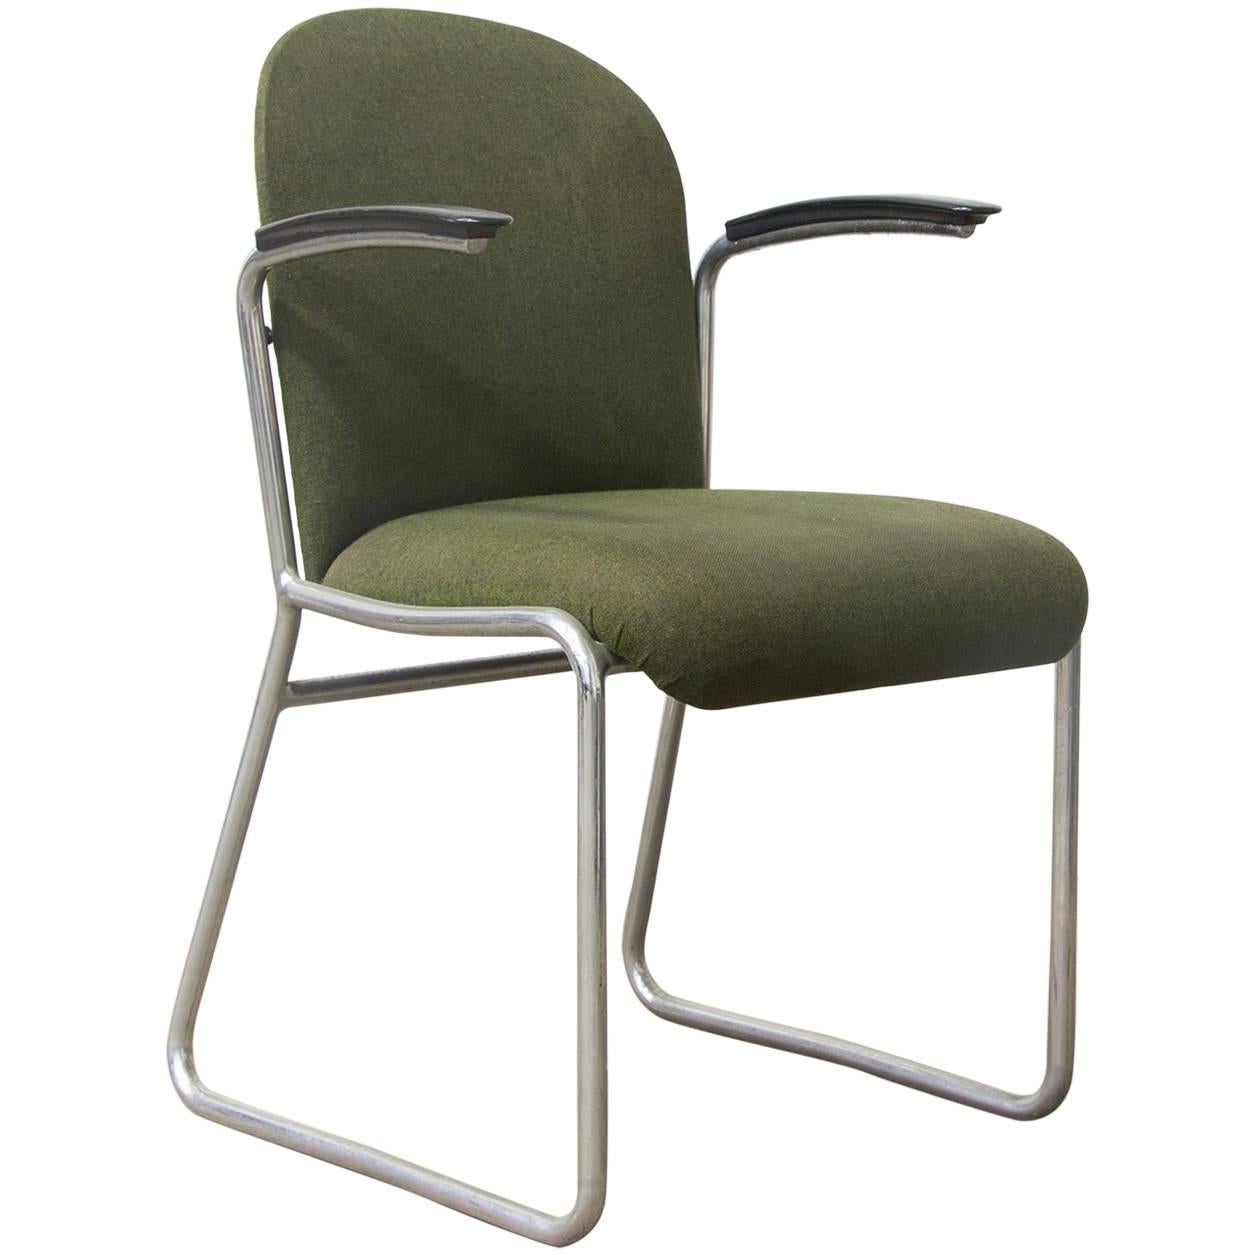 1935 W.H. Gispen for Gispen, Rare Framed 413R Side Chair, Original Green Fabric